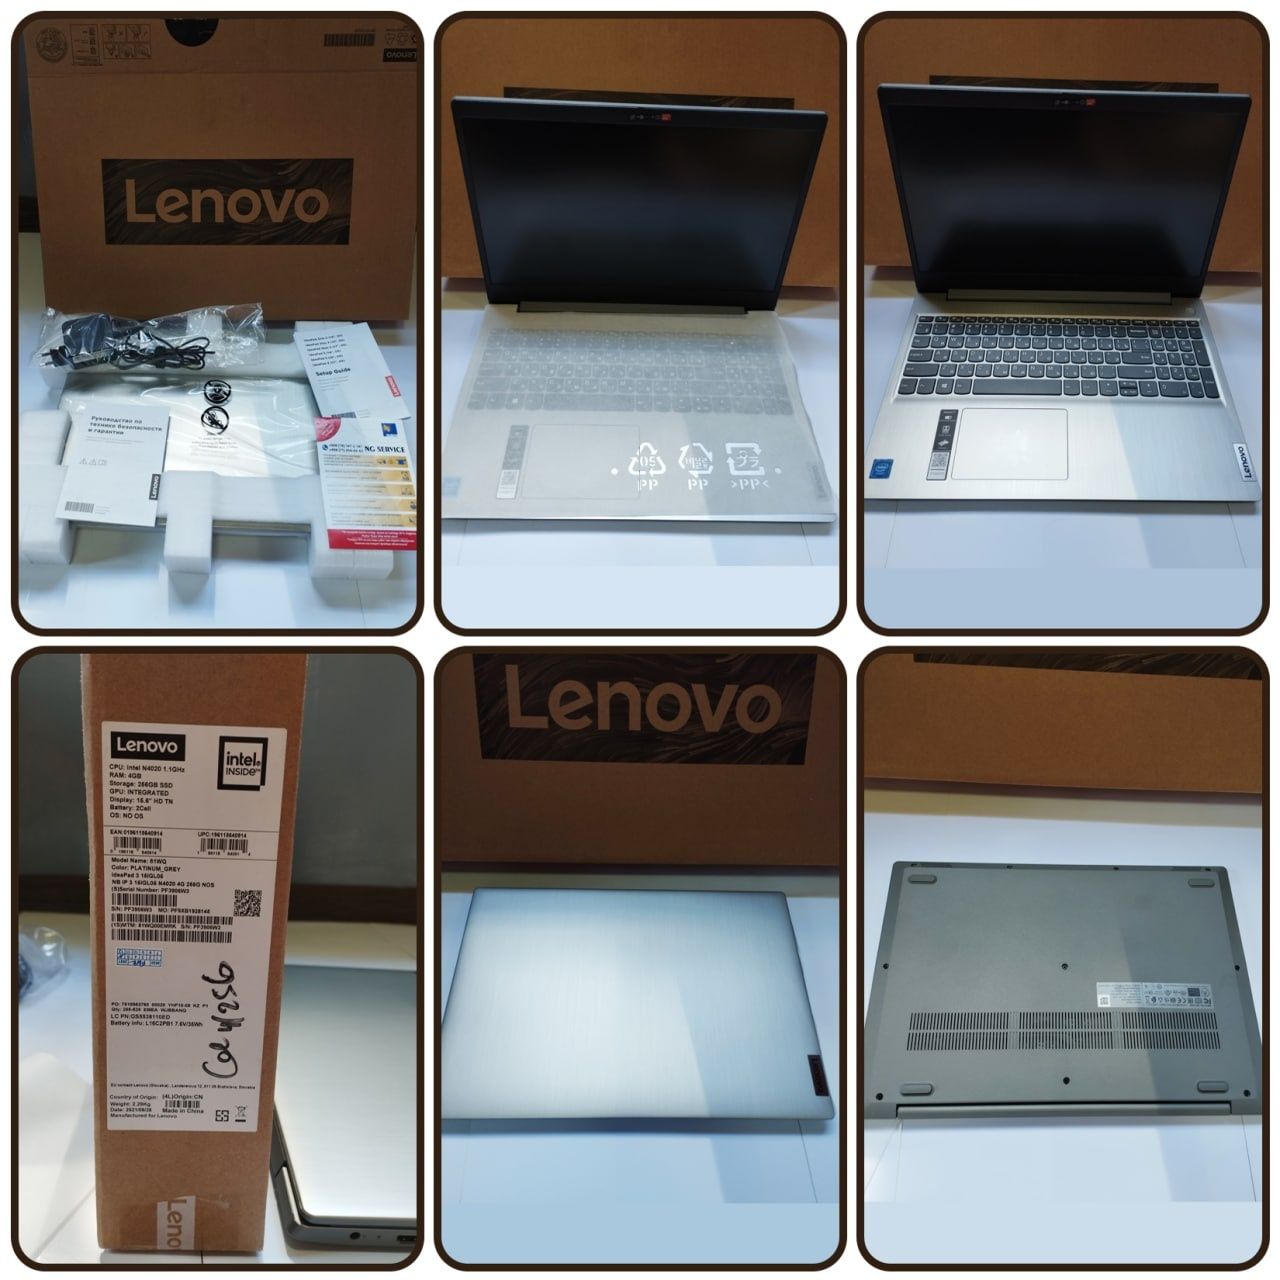 Notbook Lenovo yaxshi ishlatilgan qiynalmagan